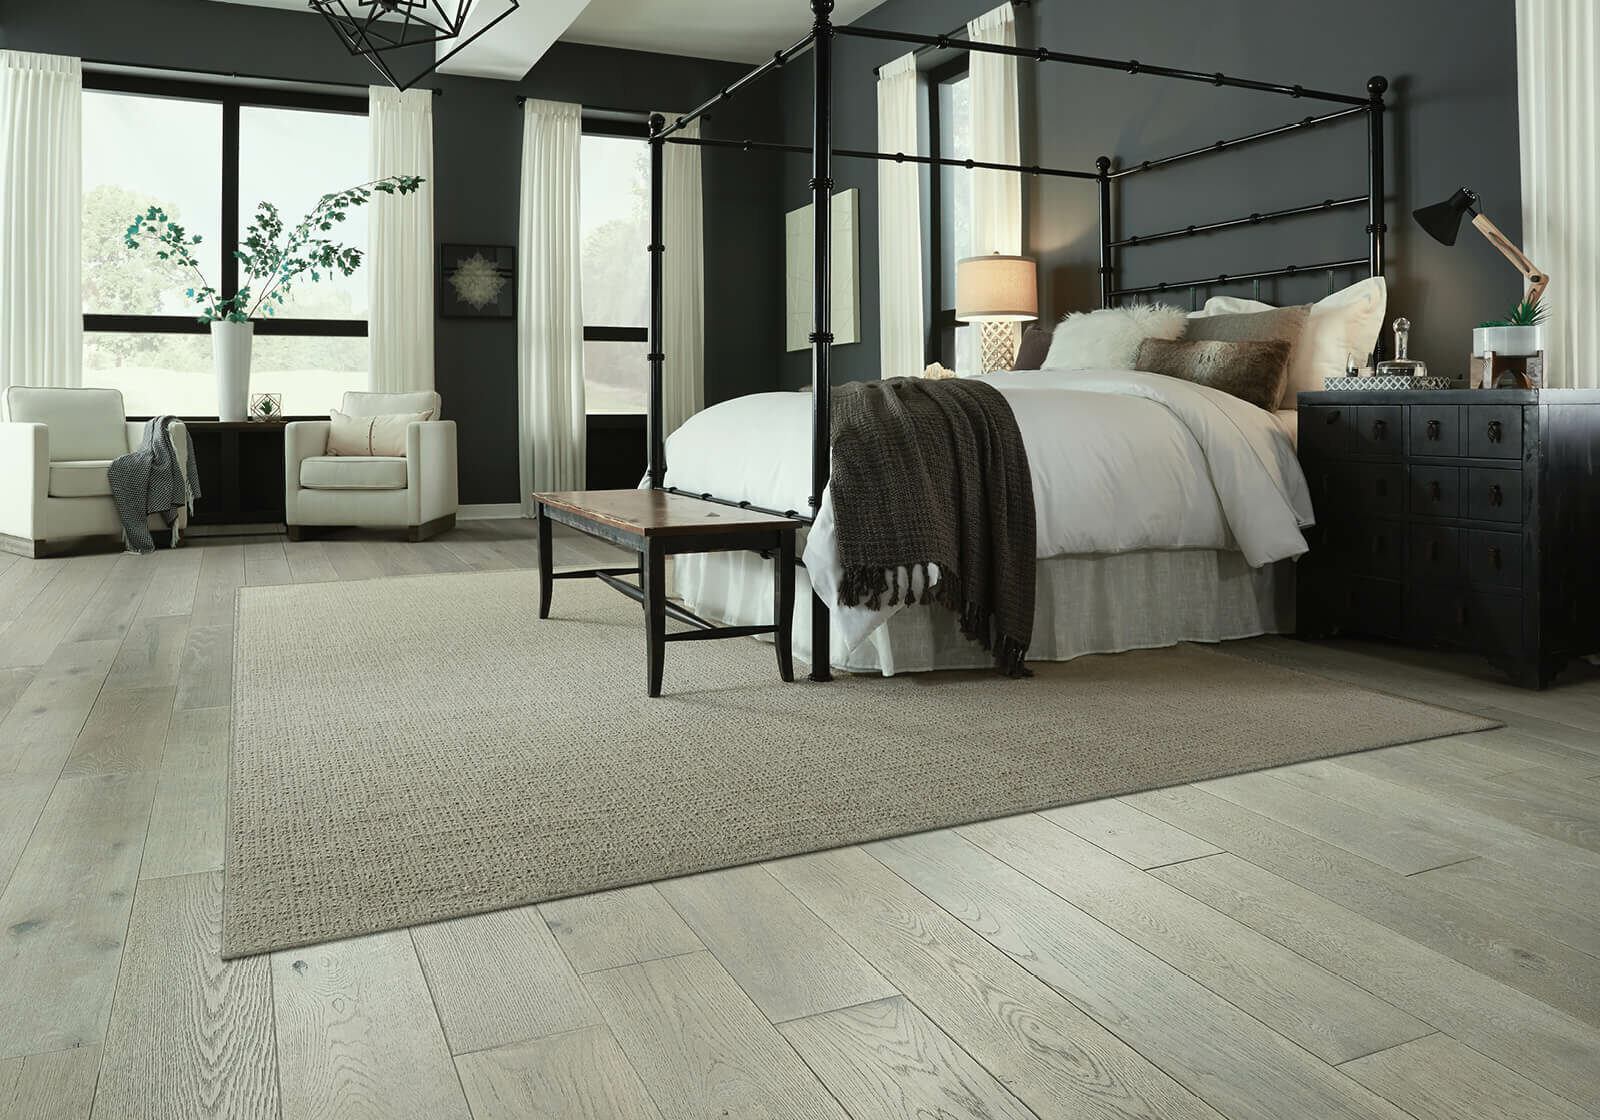 Spacious bedroom flooring | The L&L Company